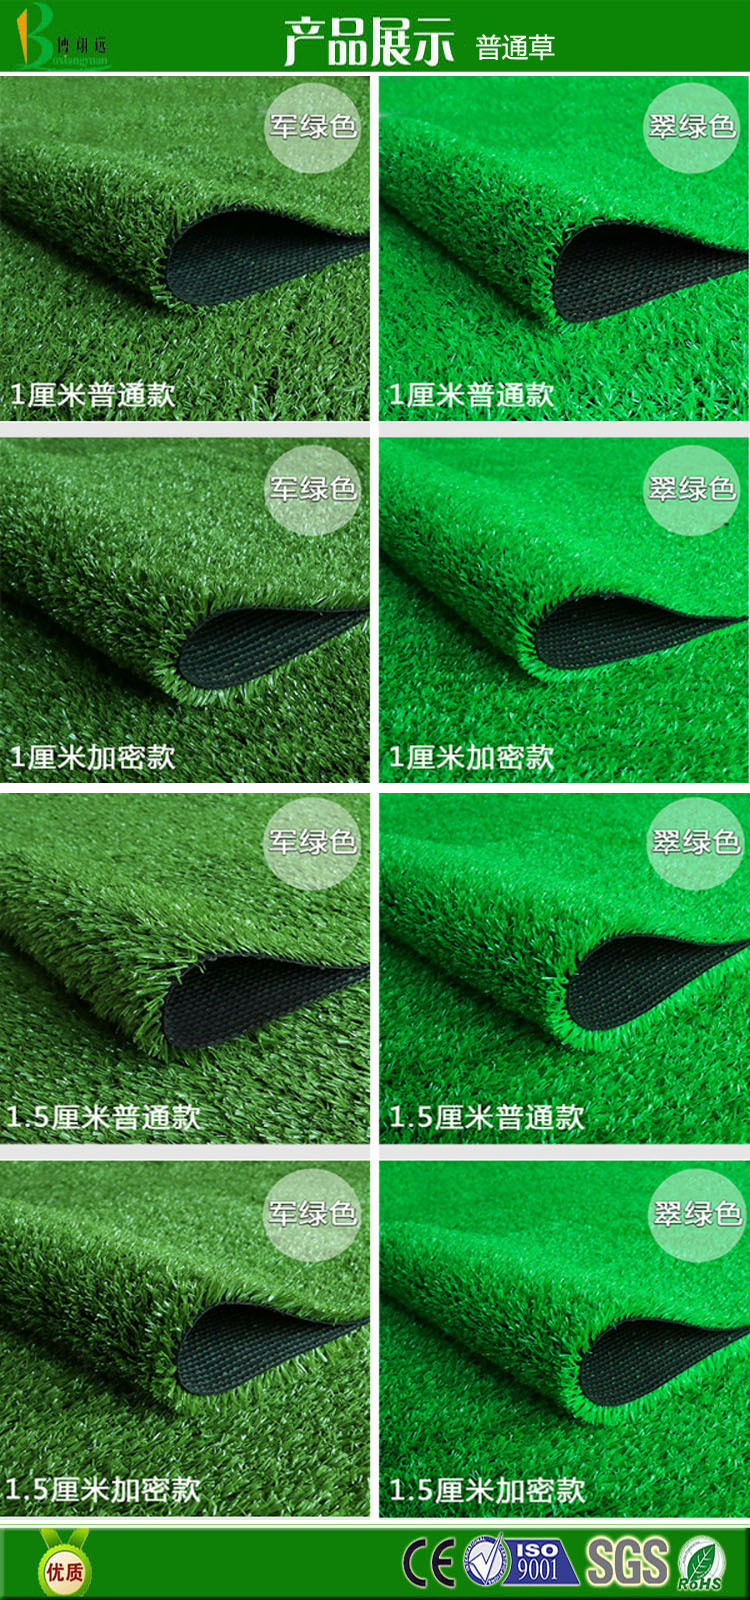 博翔远草坪厂家供应 人造草皮 优质足球场人造草皮 抗UV塑料草坪地毯示例图4